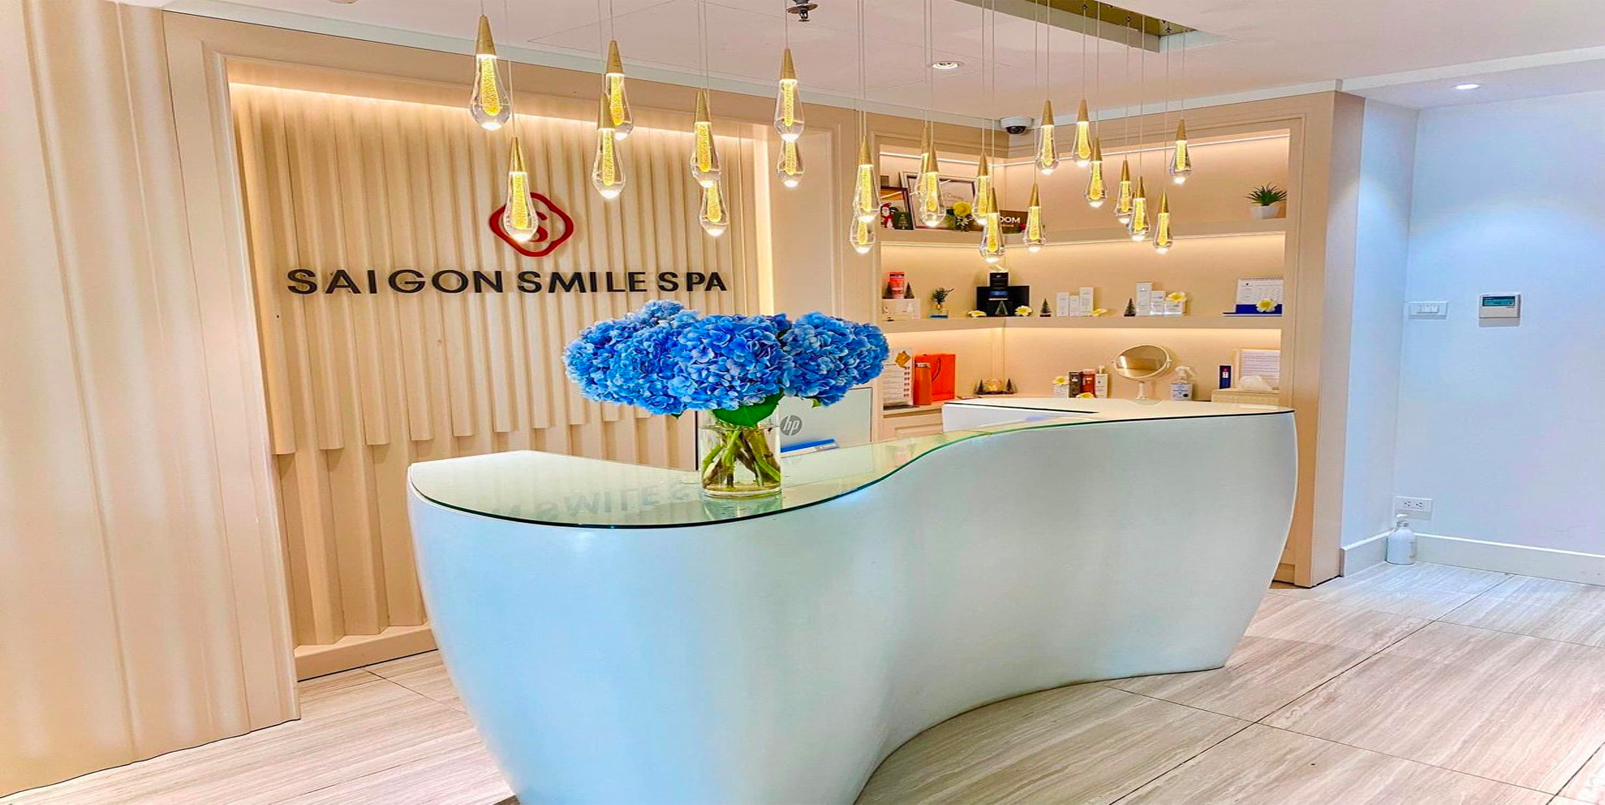 Saigon Smile Spa - Dịch vụ chăm sóc sắc đẹp 5 sao chuẩn Mỹ